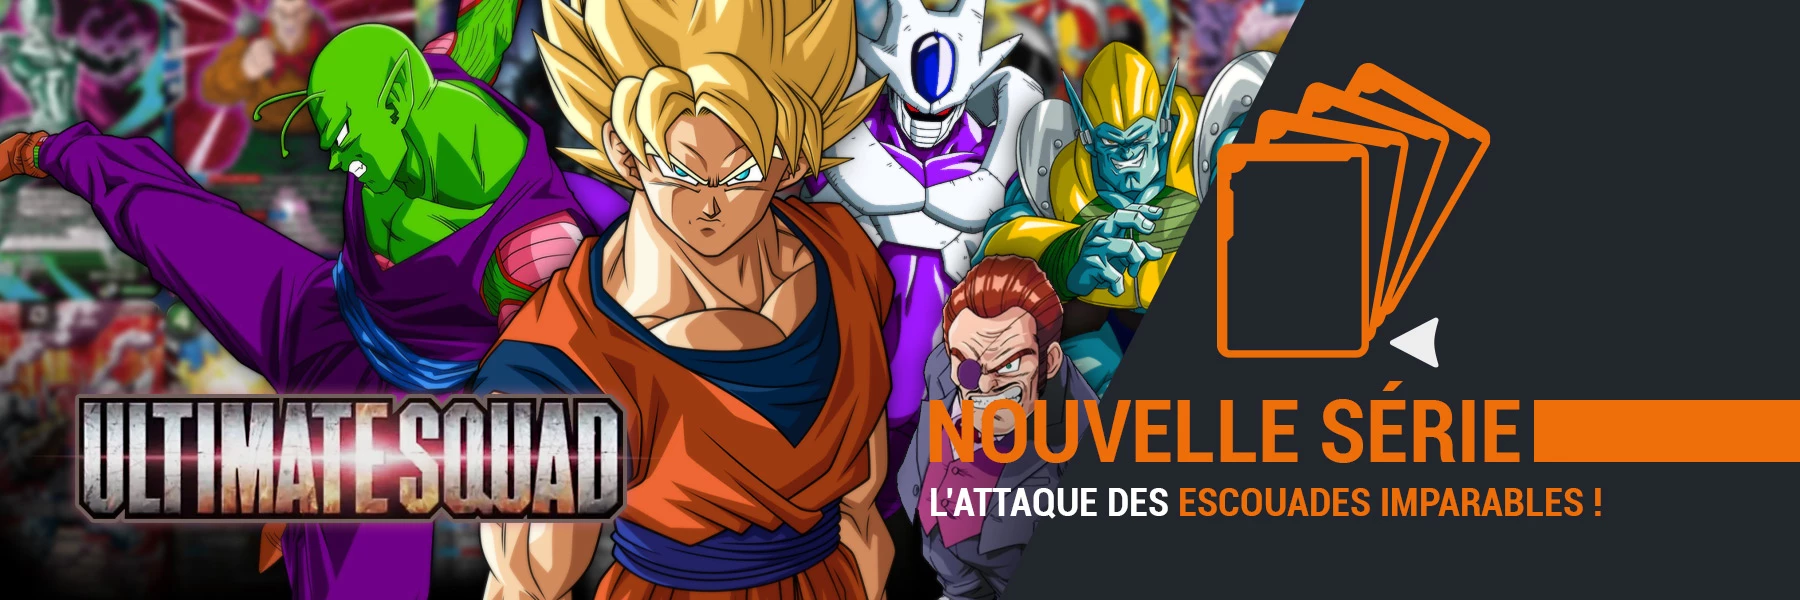 Nouvelle série BT17 - Ultimate Squad disponible sur DBSCards.fr !